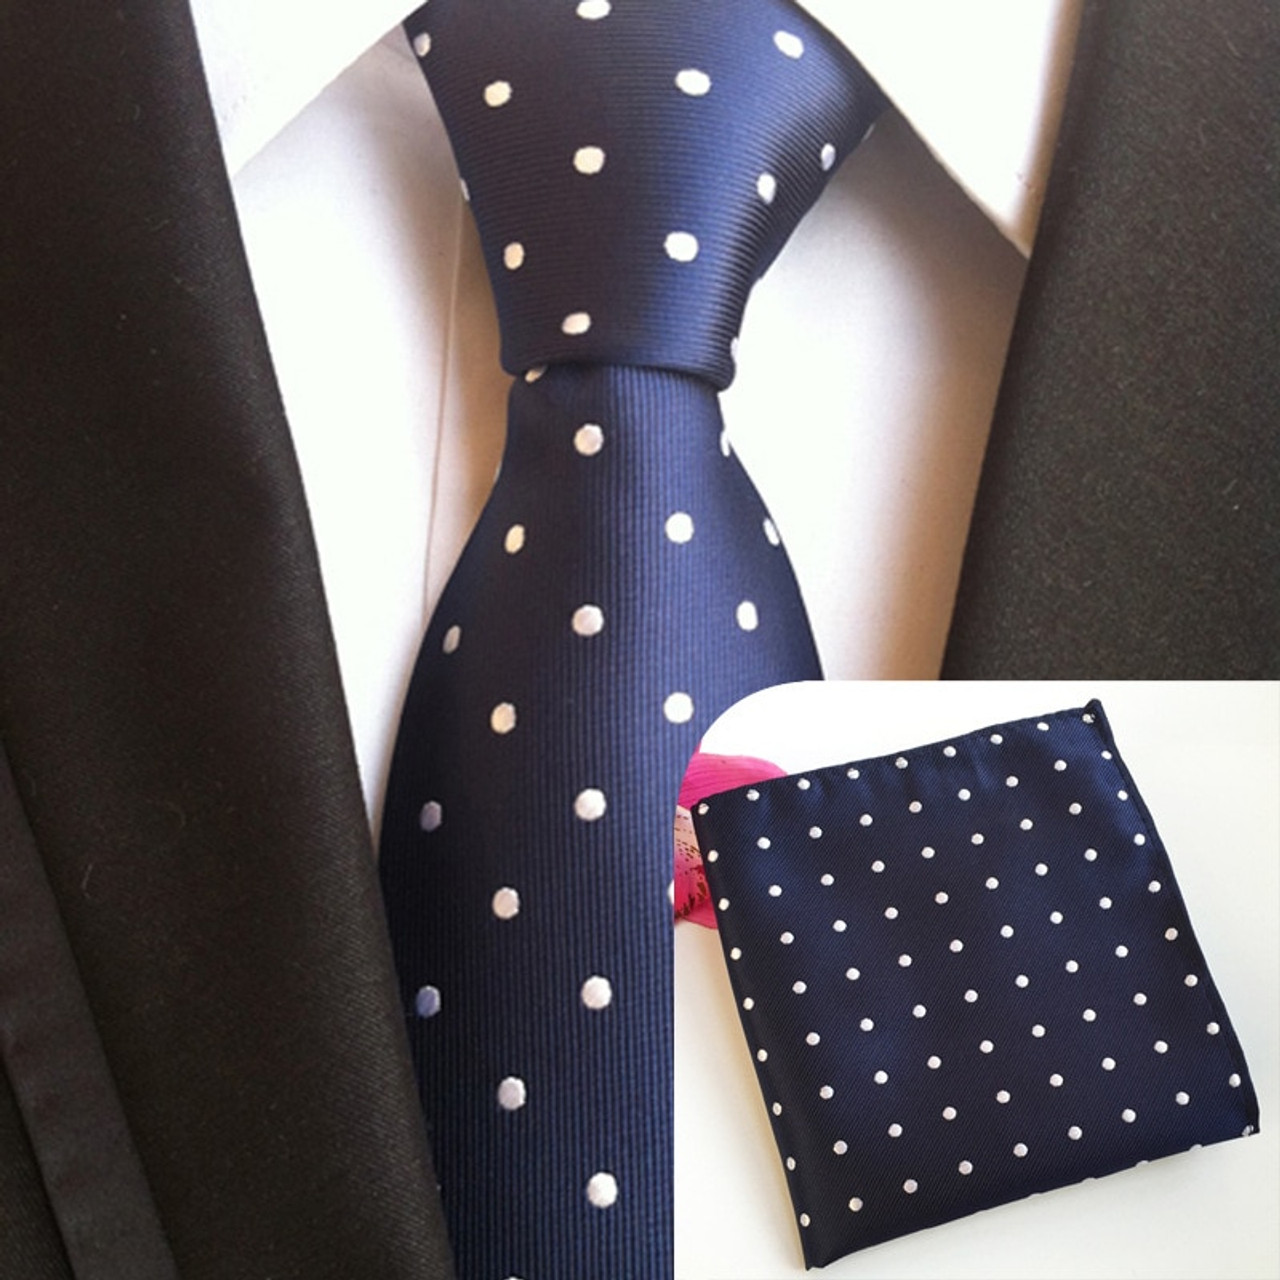 17 Color Wholesale Lot Men's Classic Tie Silk Necktie Woven Jacquard Neck Ties 